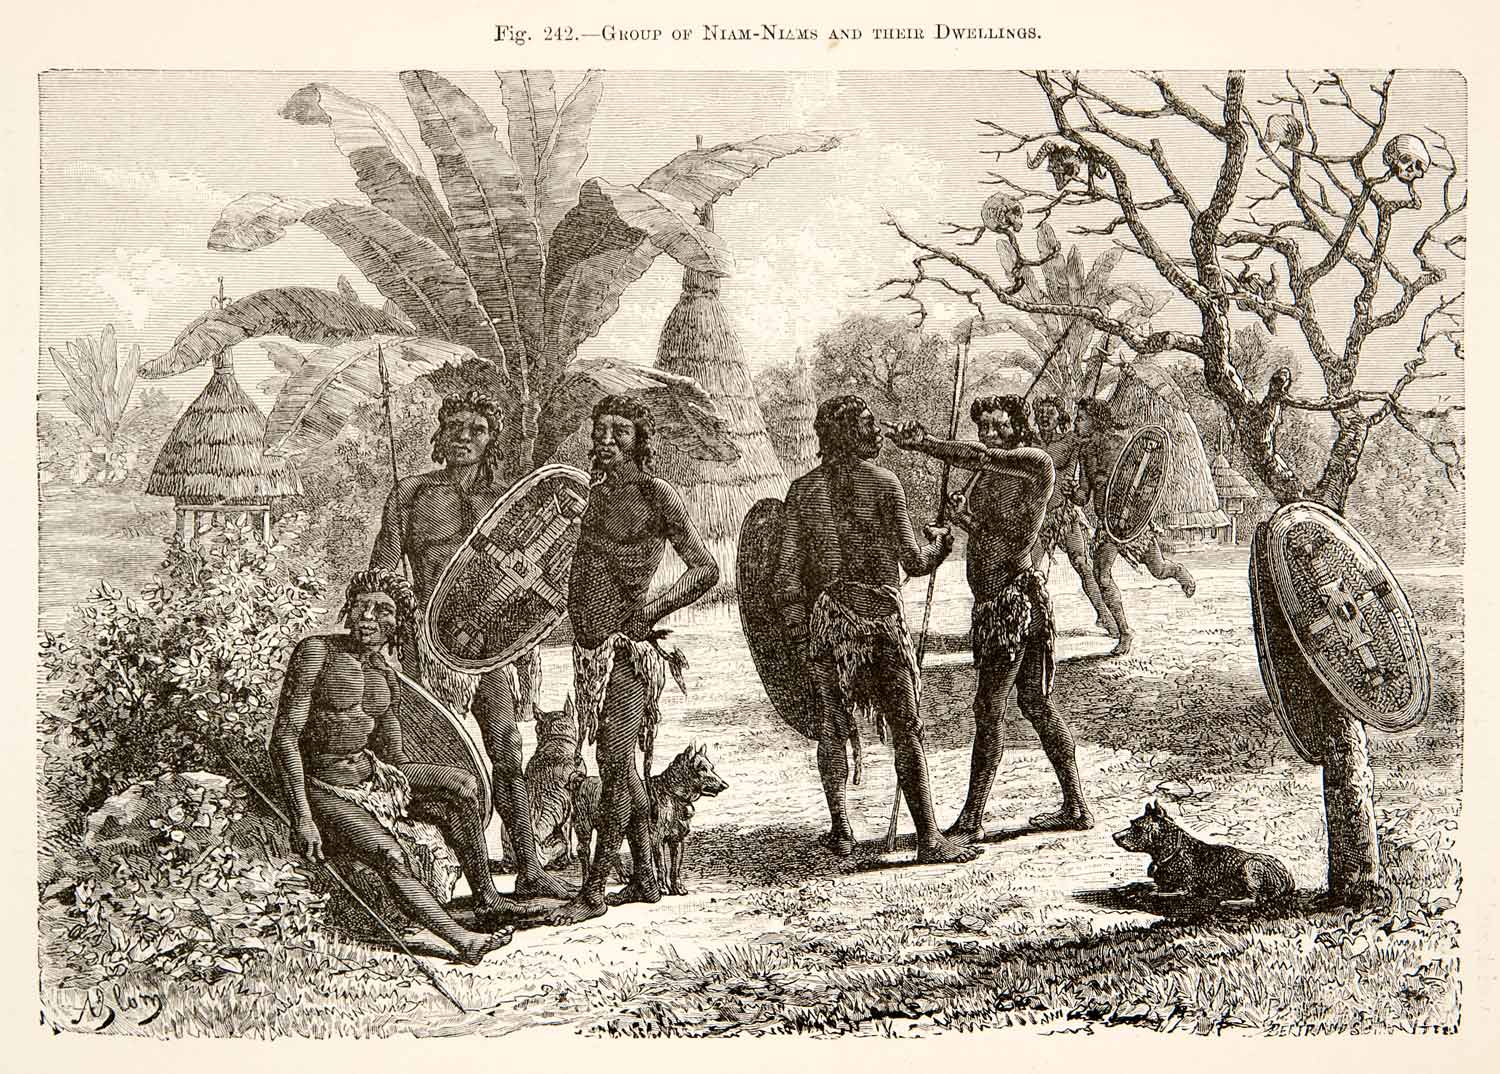 1892 Wood Engraving Azande Warriors Dog Nyam-Nyam Hut Dwelling Congo XGJC1